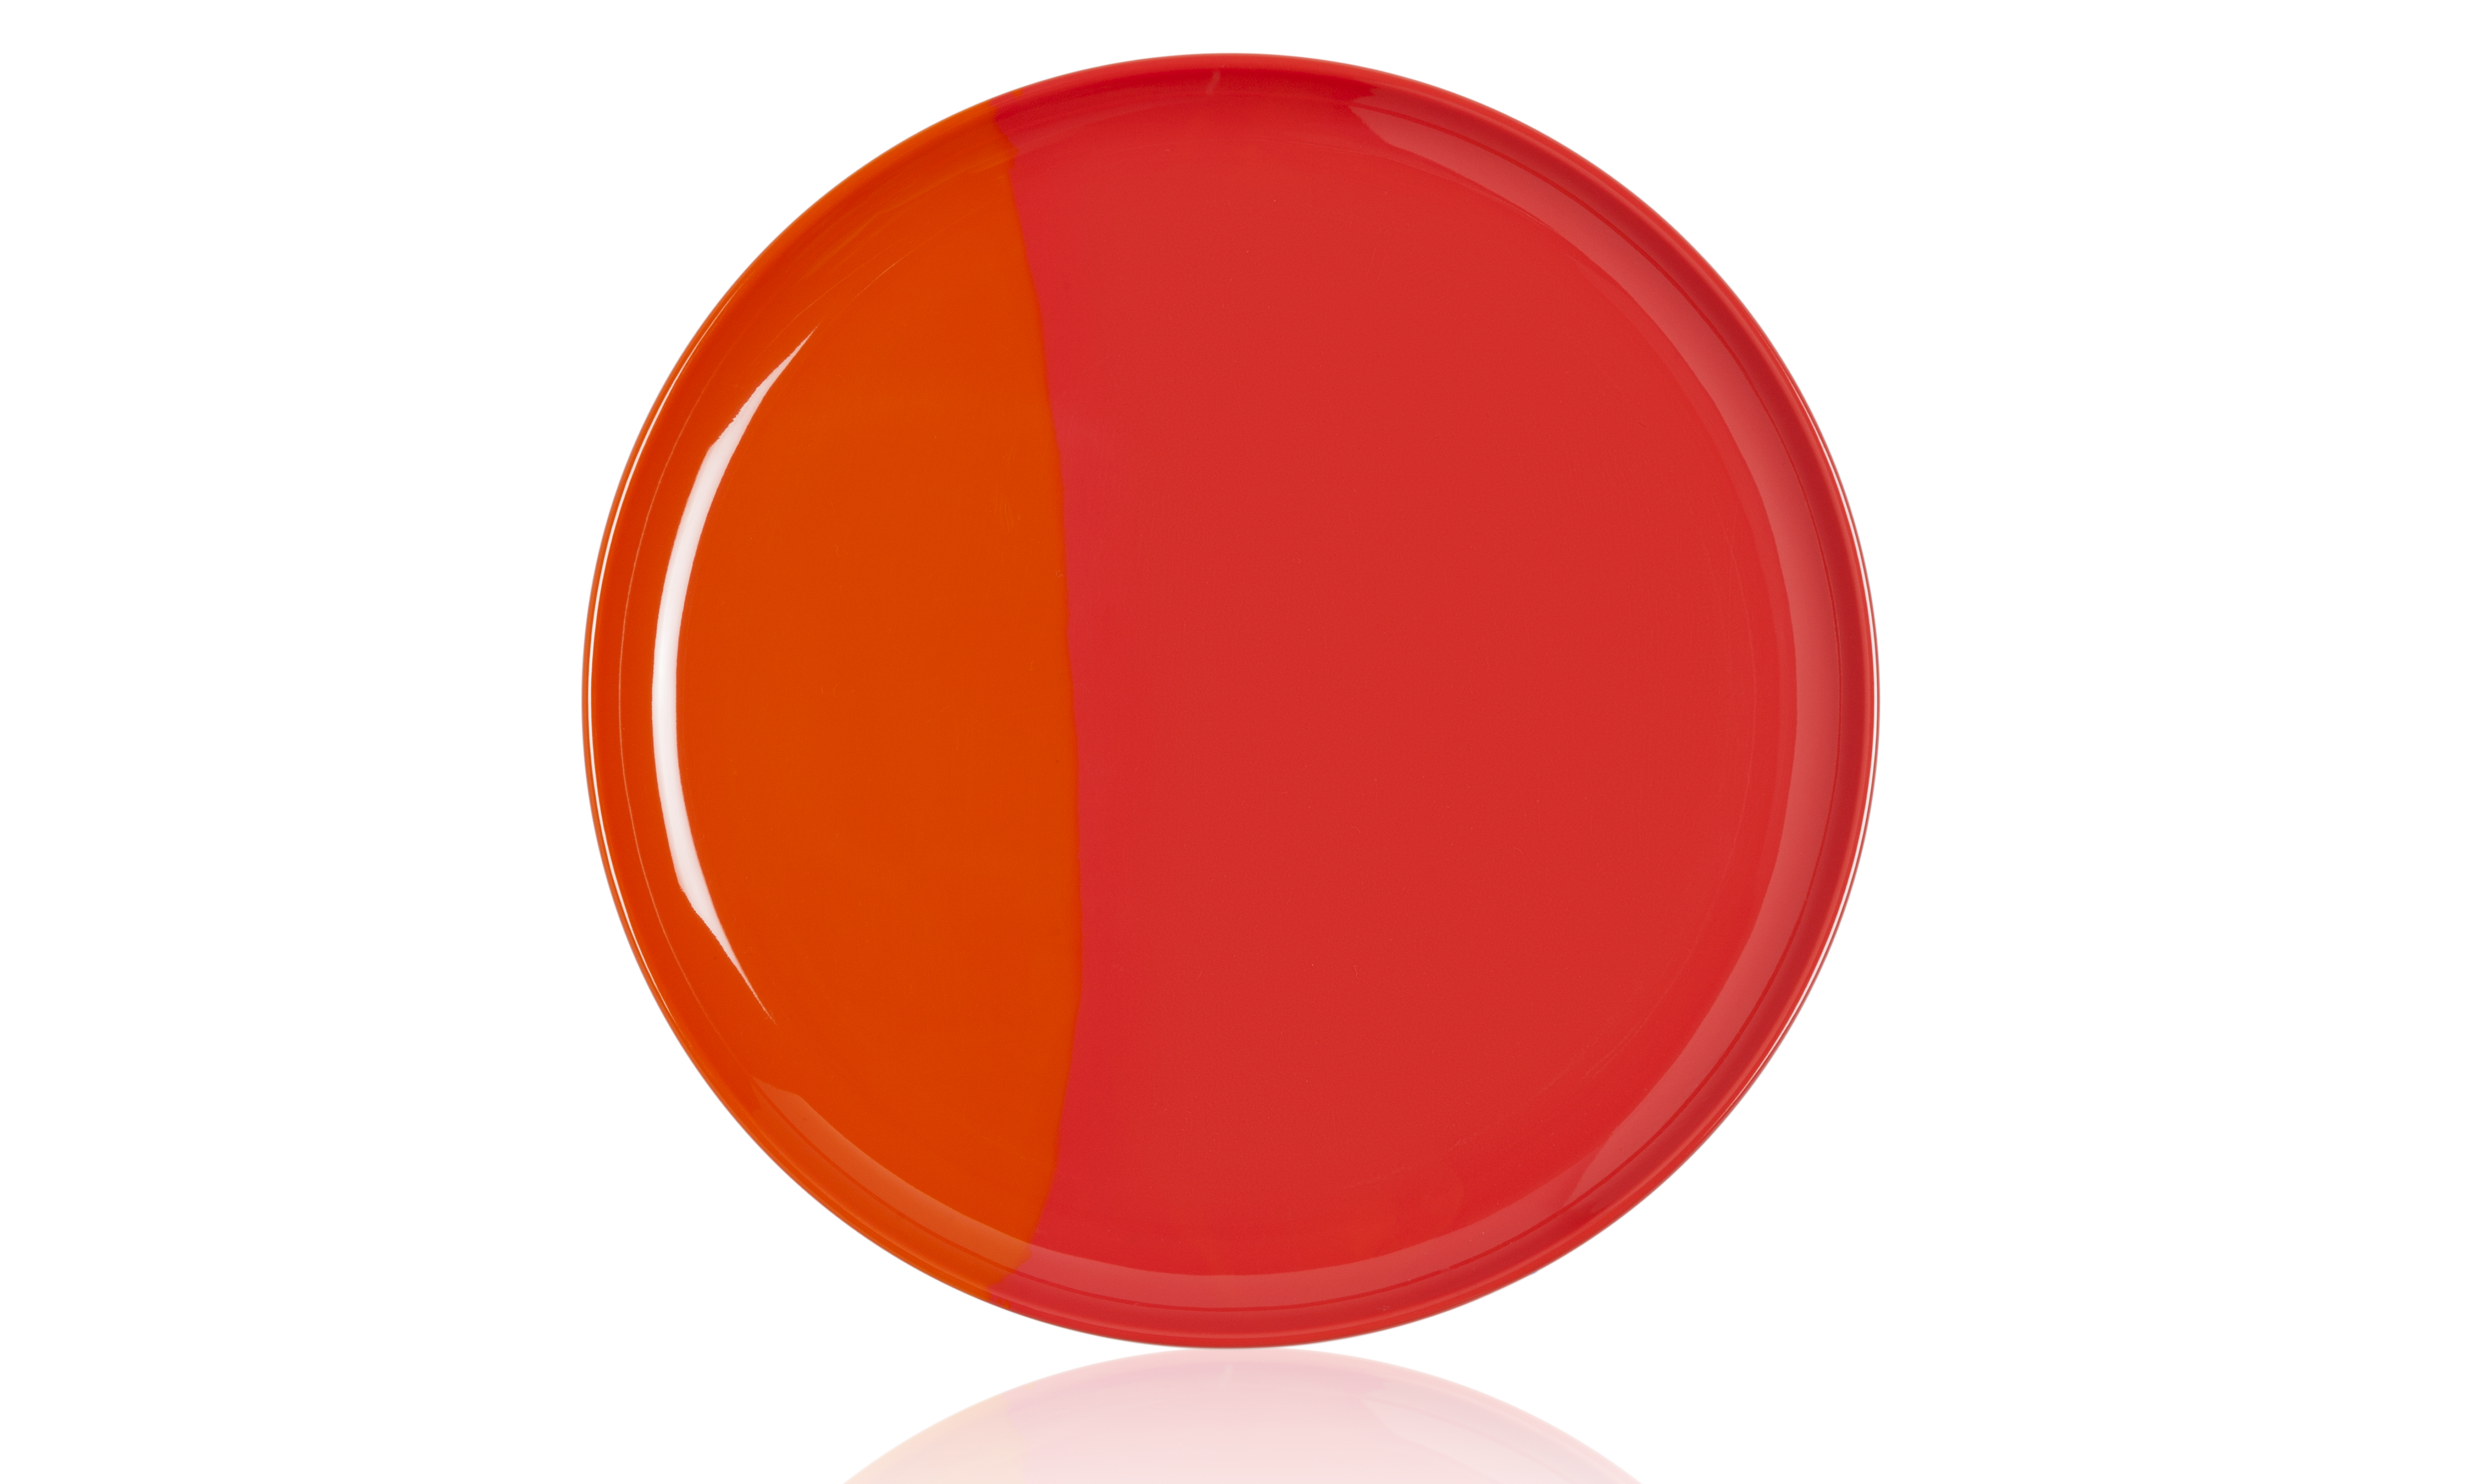 1/2 & 1/2 Melamine Dinner Plate Orange / Red (Set of 4)